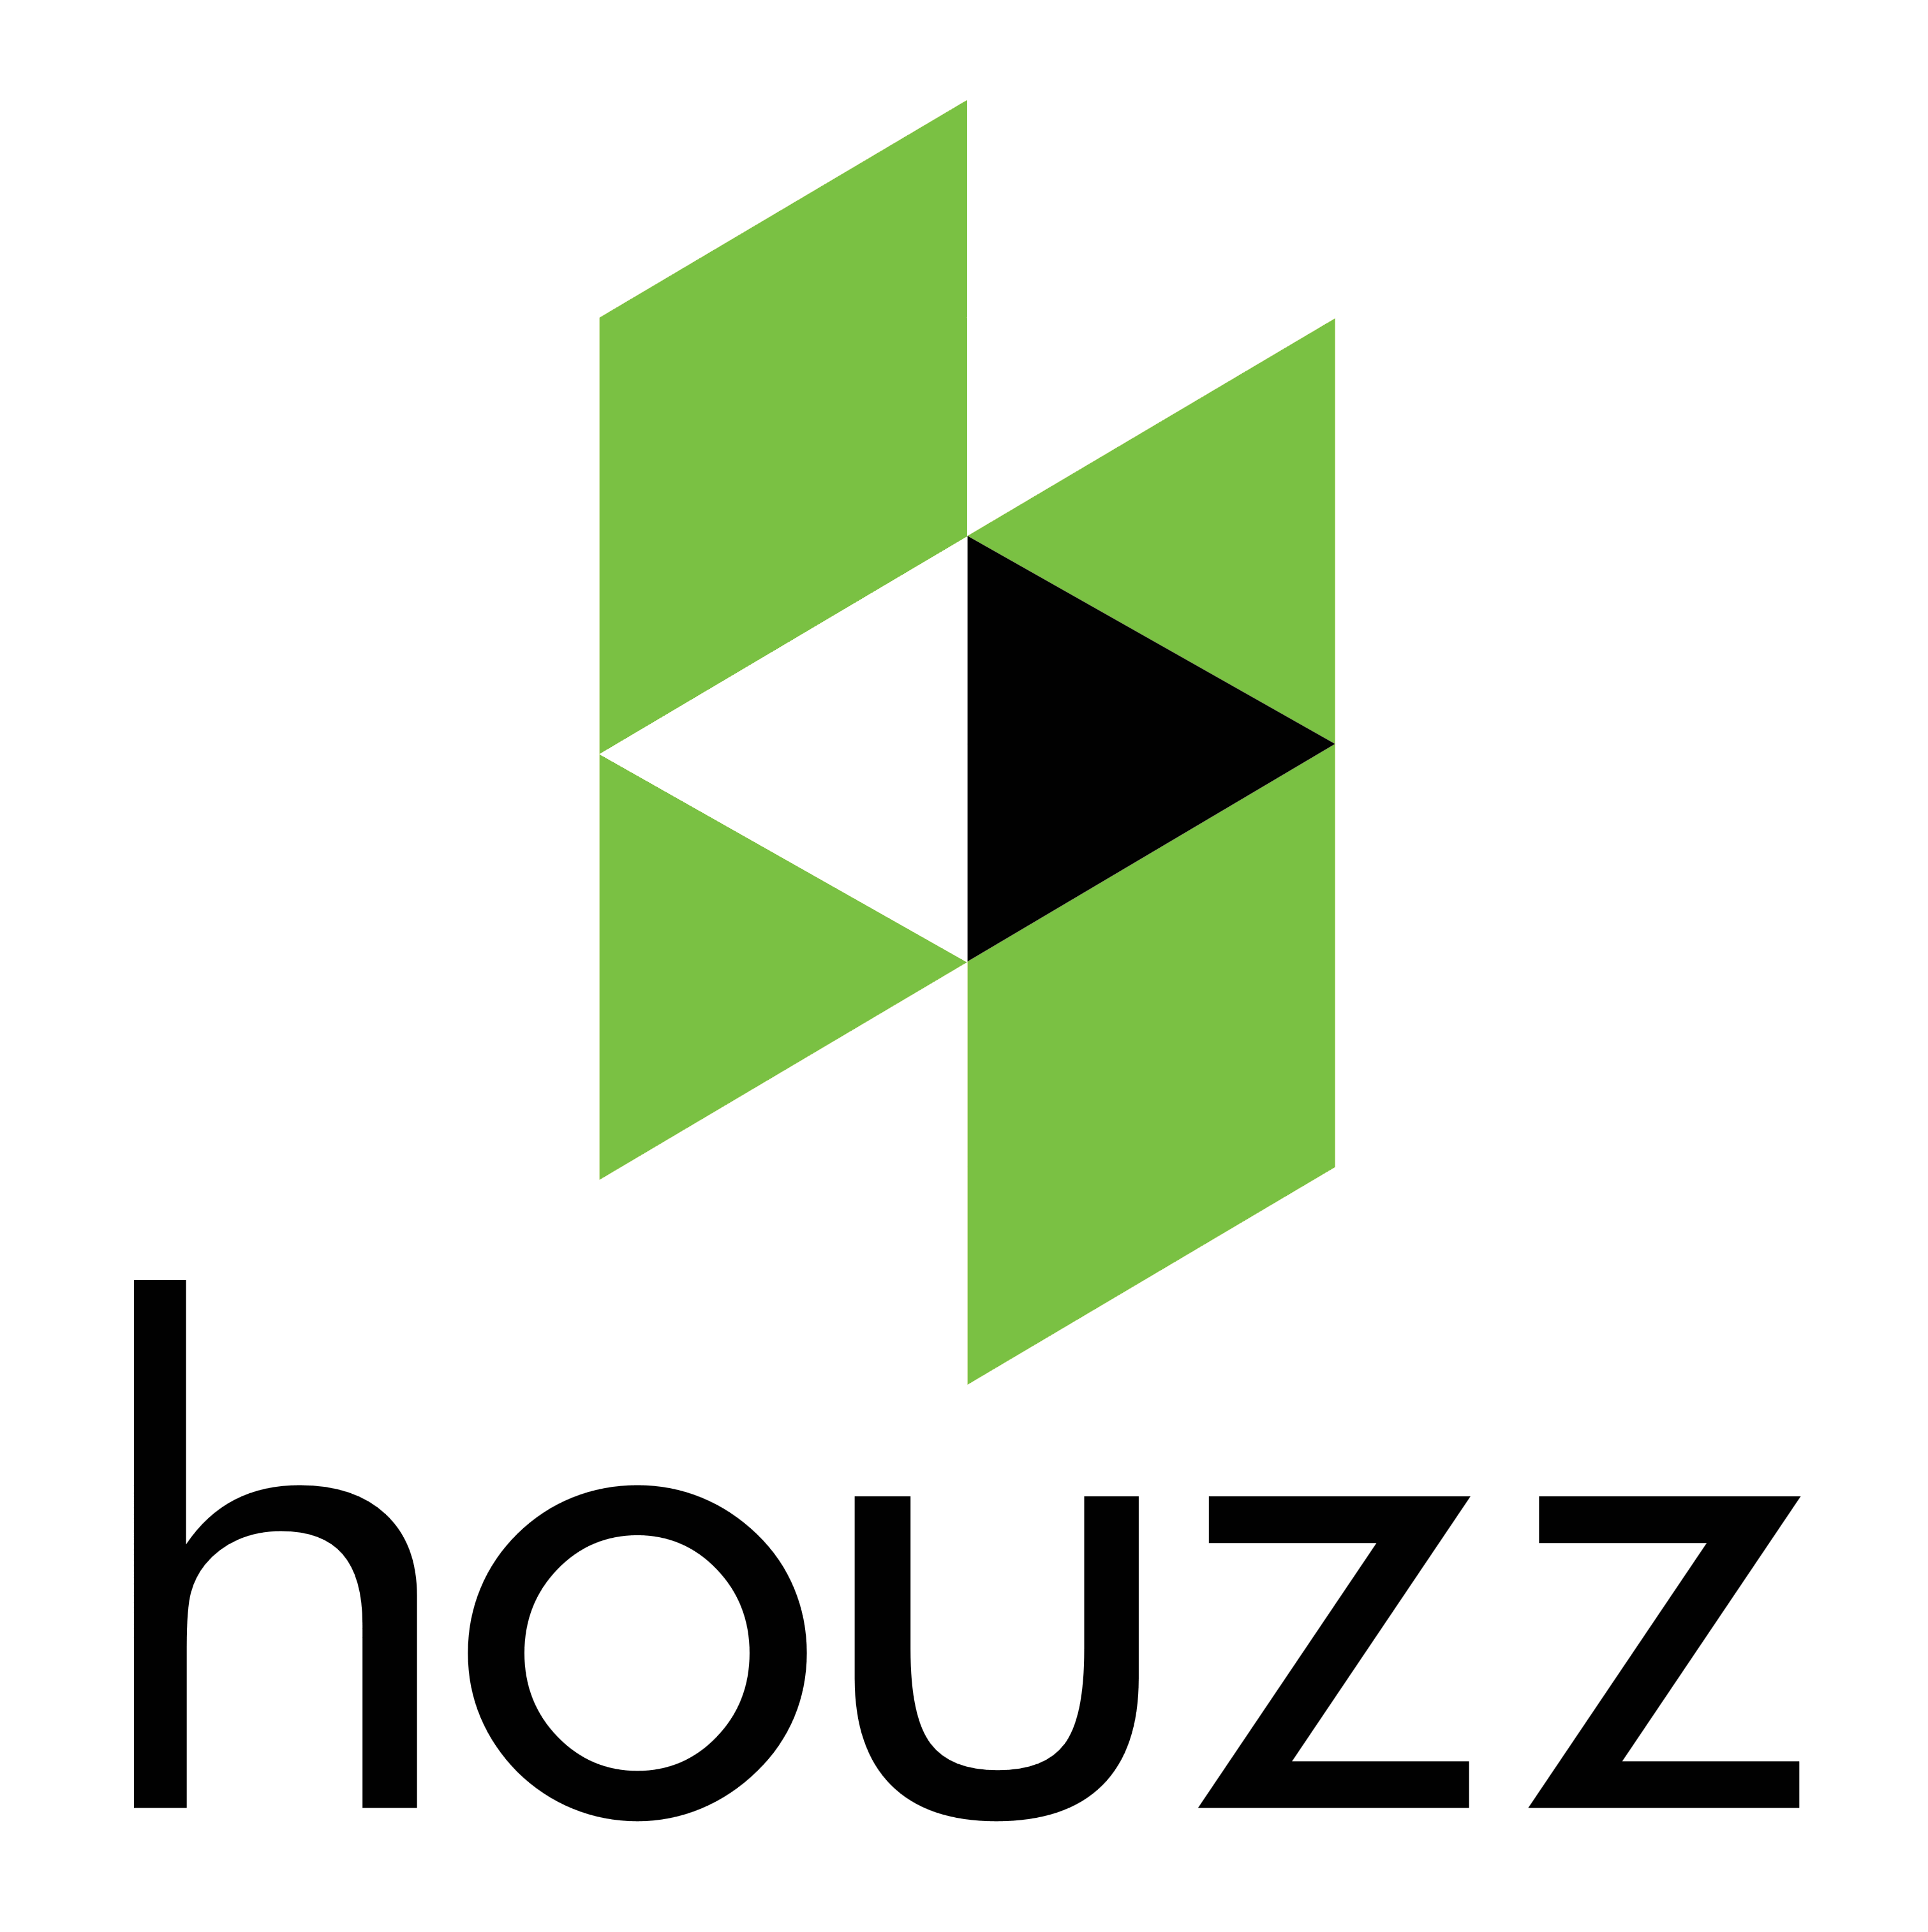 Houzz Logo - Houzz Logo Design & Integration